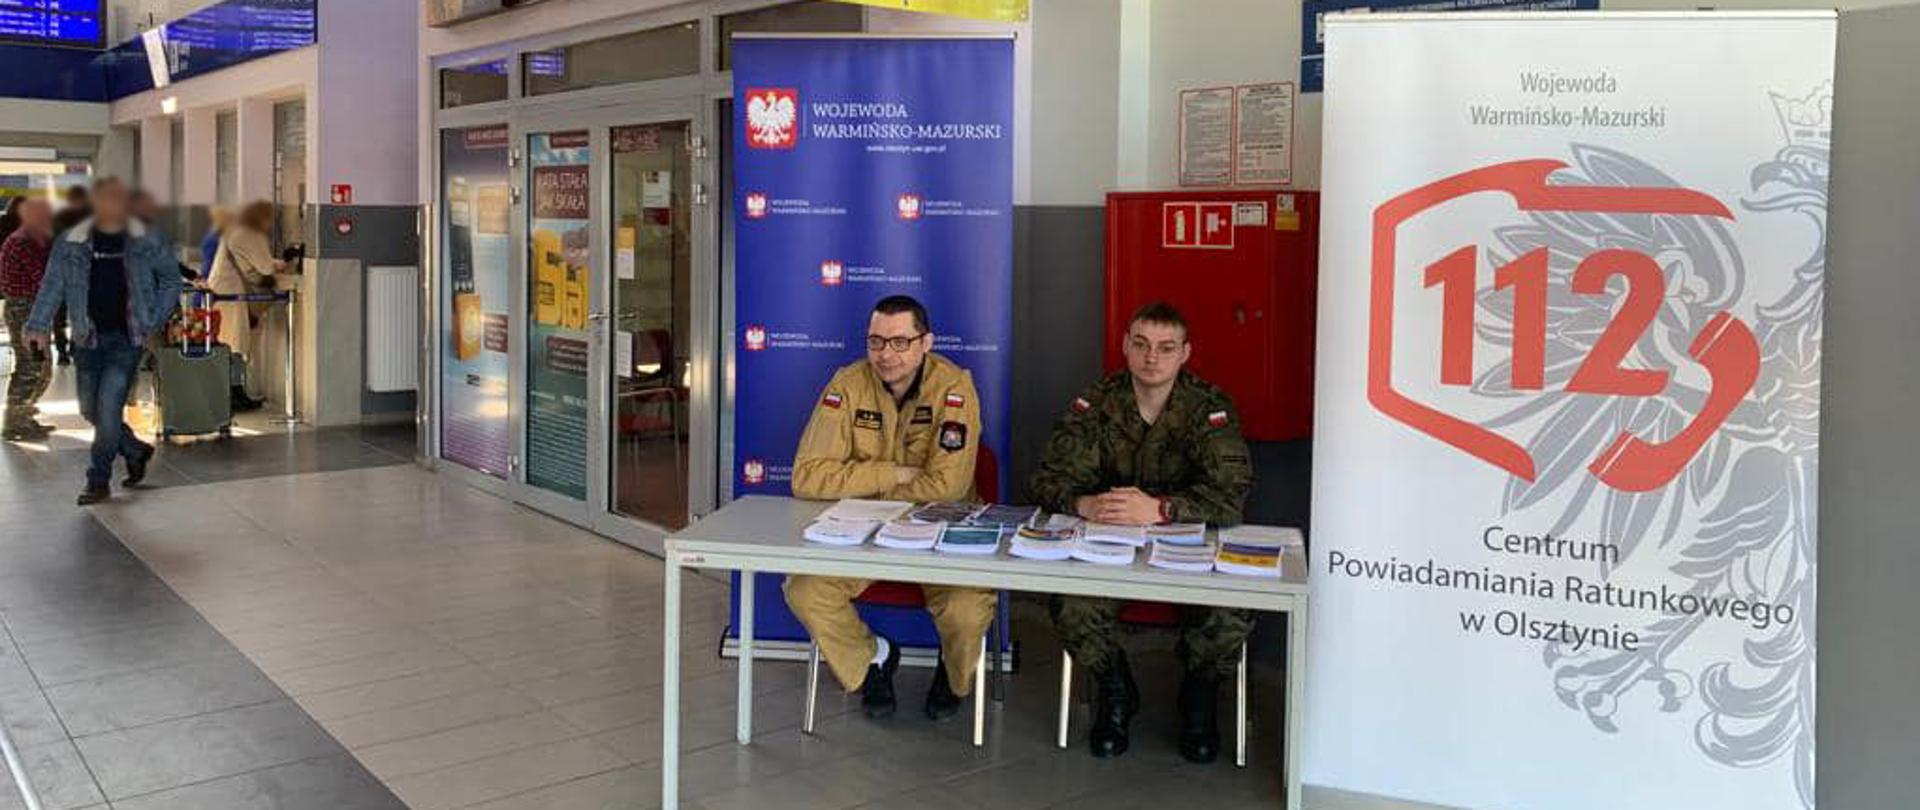 Punkt informacyjny dla uchodźców z Ukrainy, na dworcu kolejowym w Elblągu. Przy stoliku siedzi strażak państwowej straży pożarnej i żołnierz wojsk obrony terytorialnej. Na stoliku zgromadzone są materiały informacyjne, broszury i ulotki.